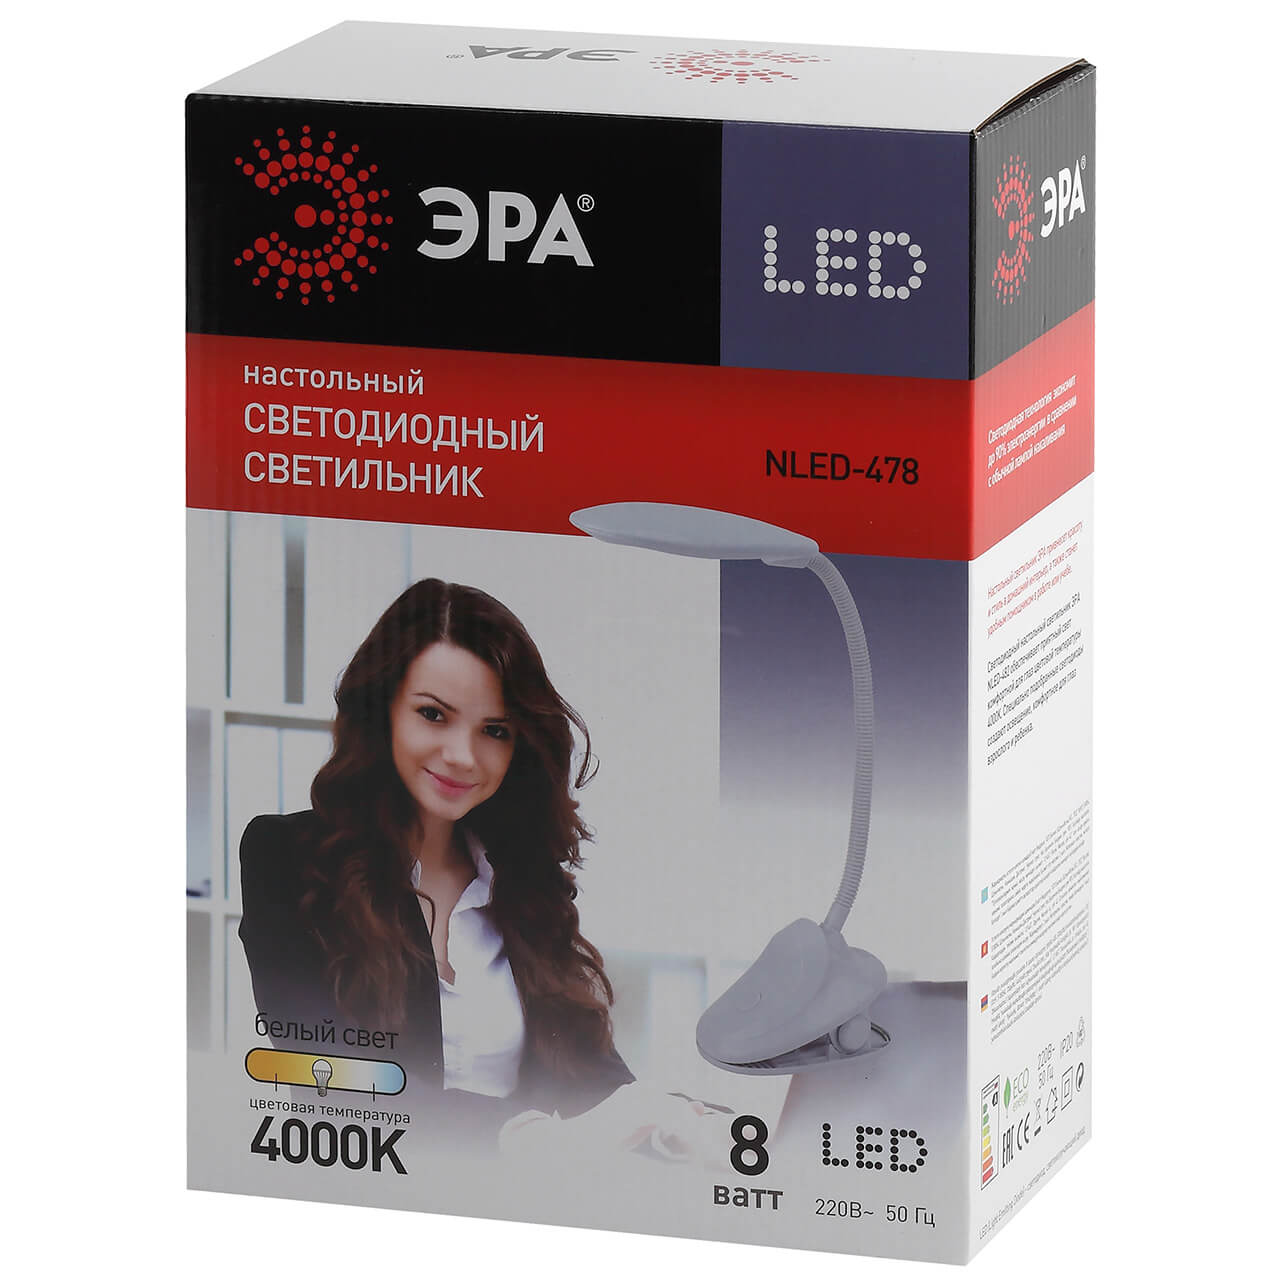 Настольная лампа ЭРА NLED-478-8W-BK Б0041085